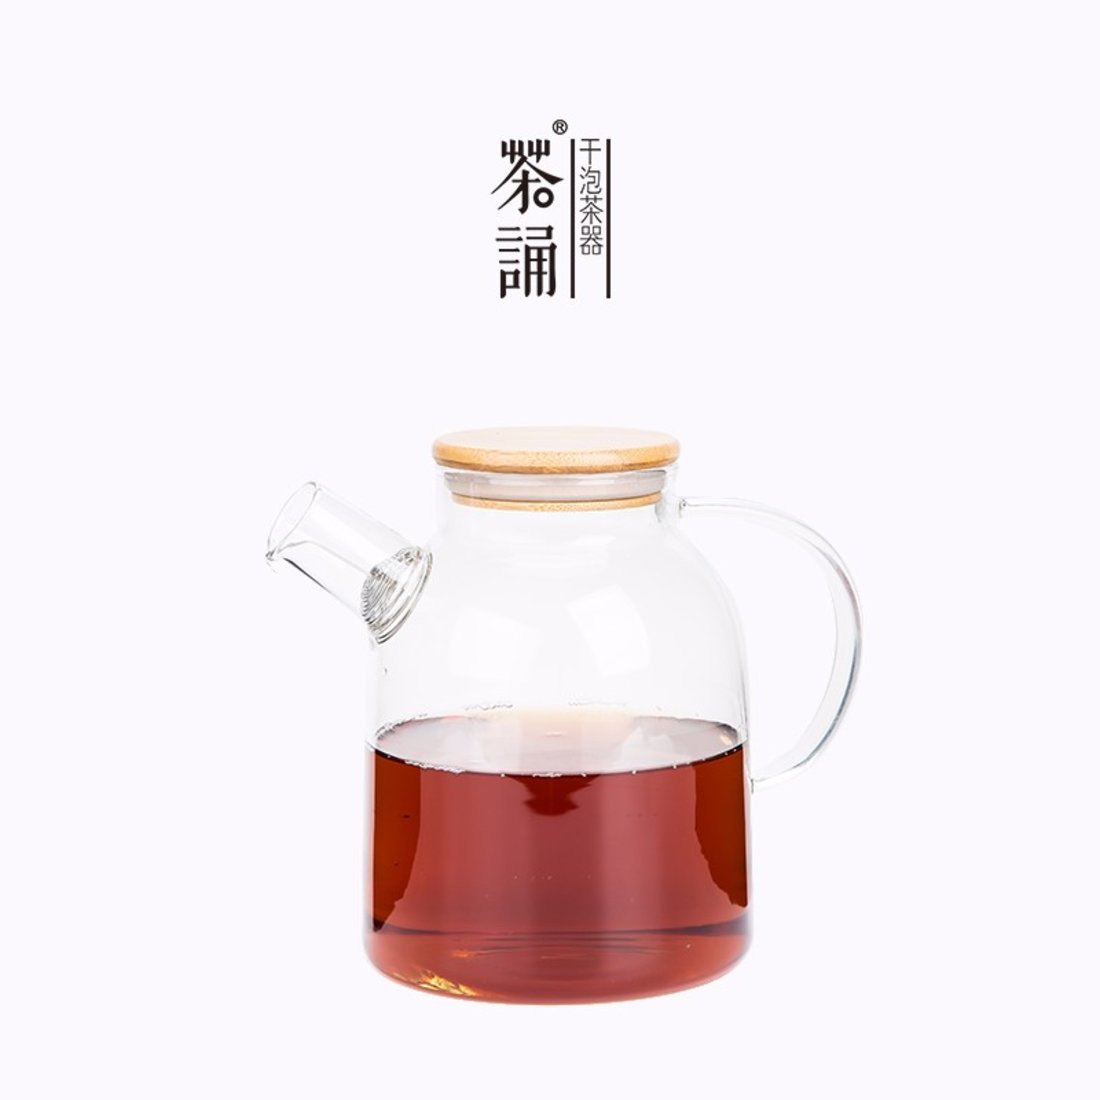 「花茶壶」耐高温透明花茶壶